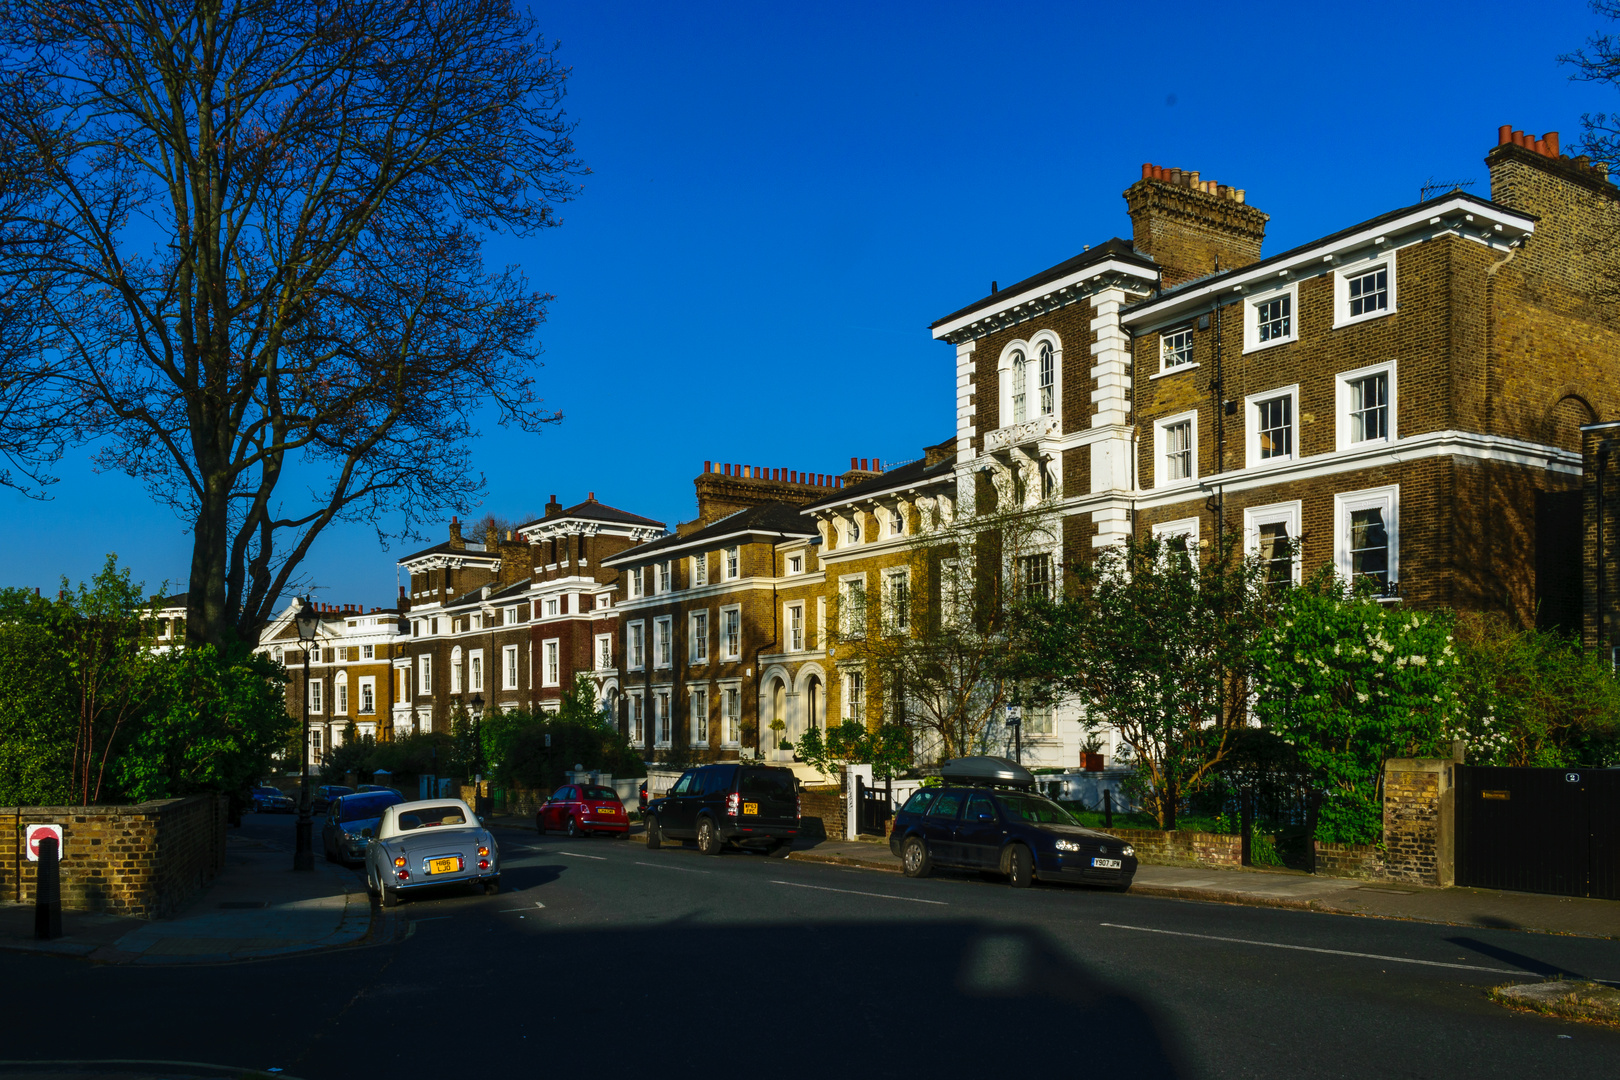 Häuserreihen im Norden Londons